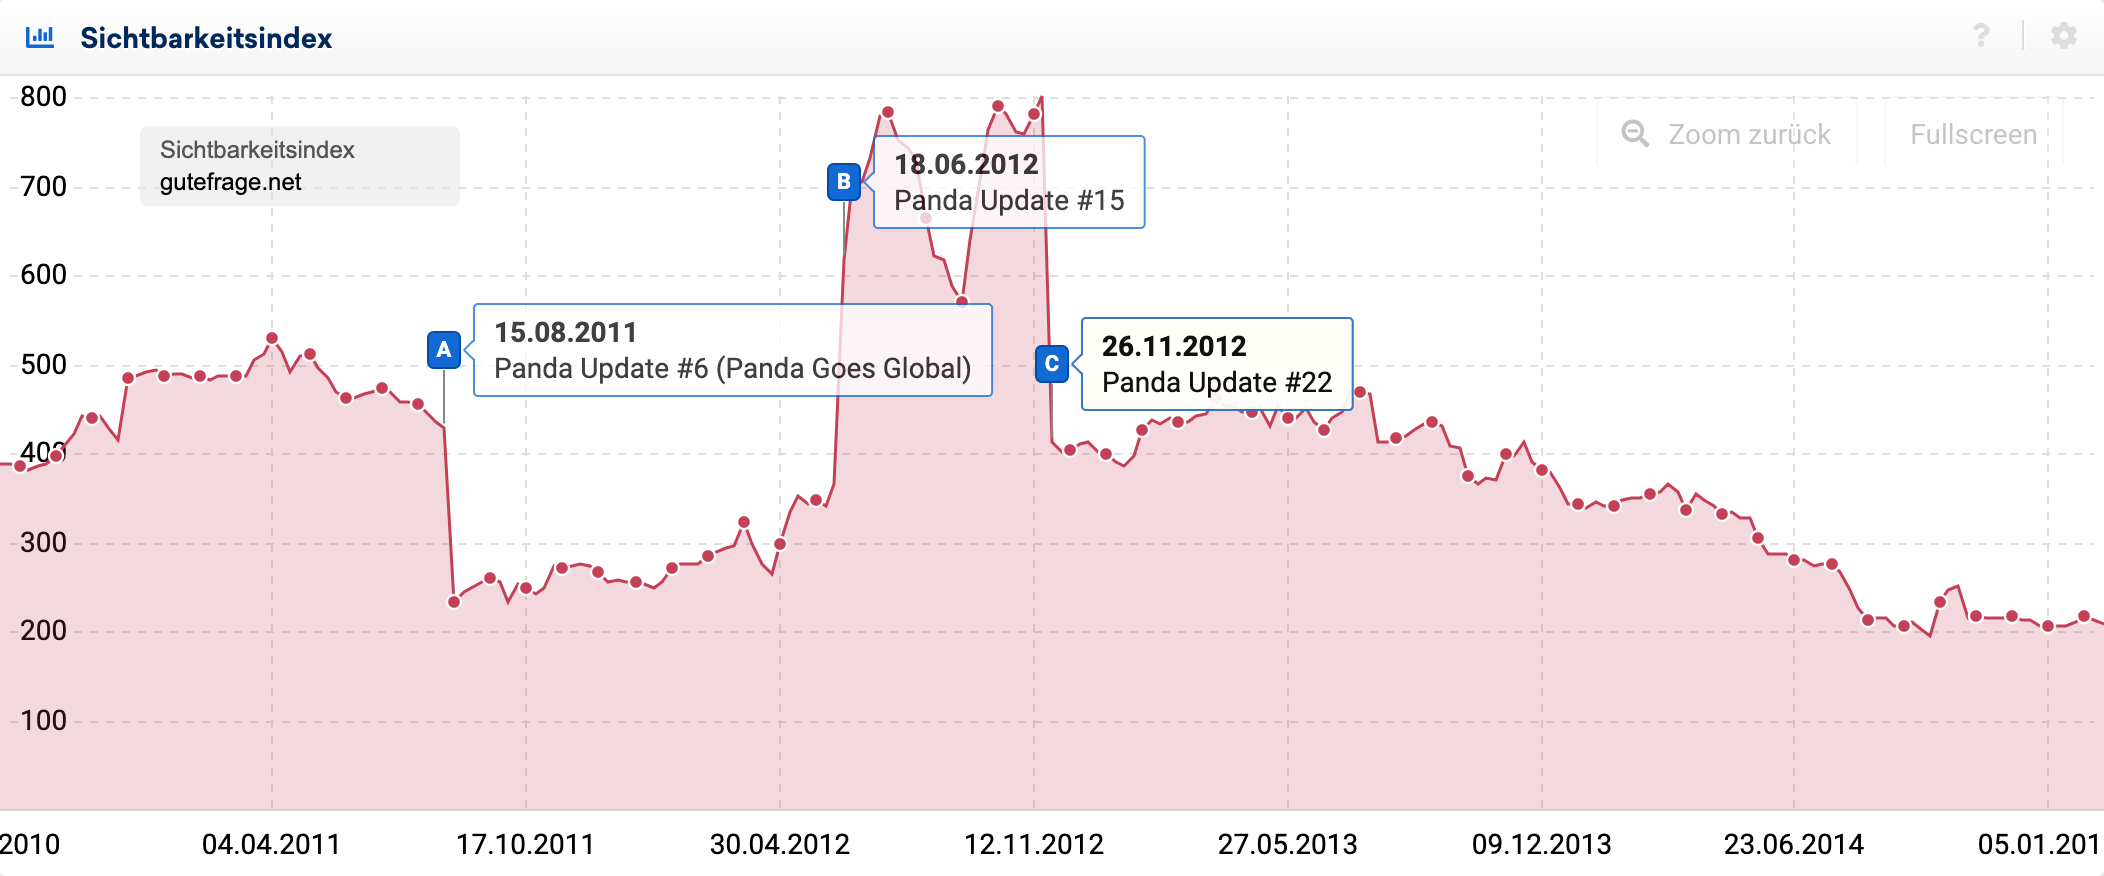 Sichtbarkeitsindex der Doman gutefrage.net zeigt die Auswirkungen des Panda-Updates und der entsprechenden Data-Refreshes anhand von Ereignis-Pins.